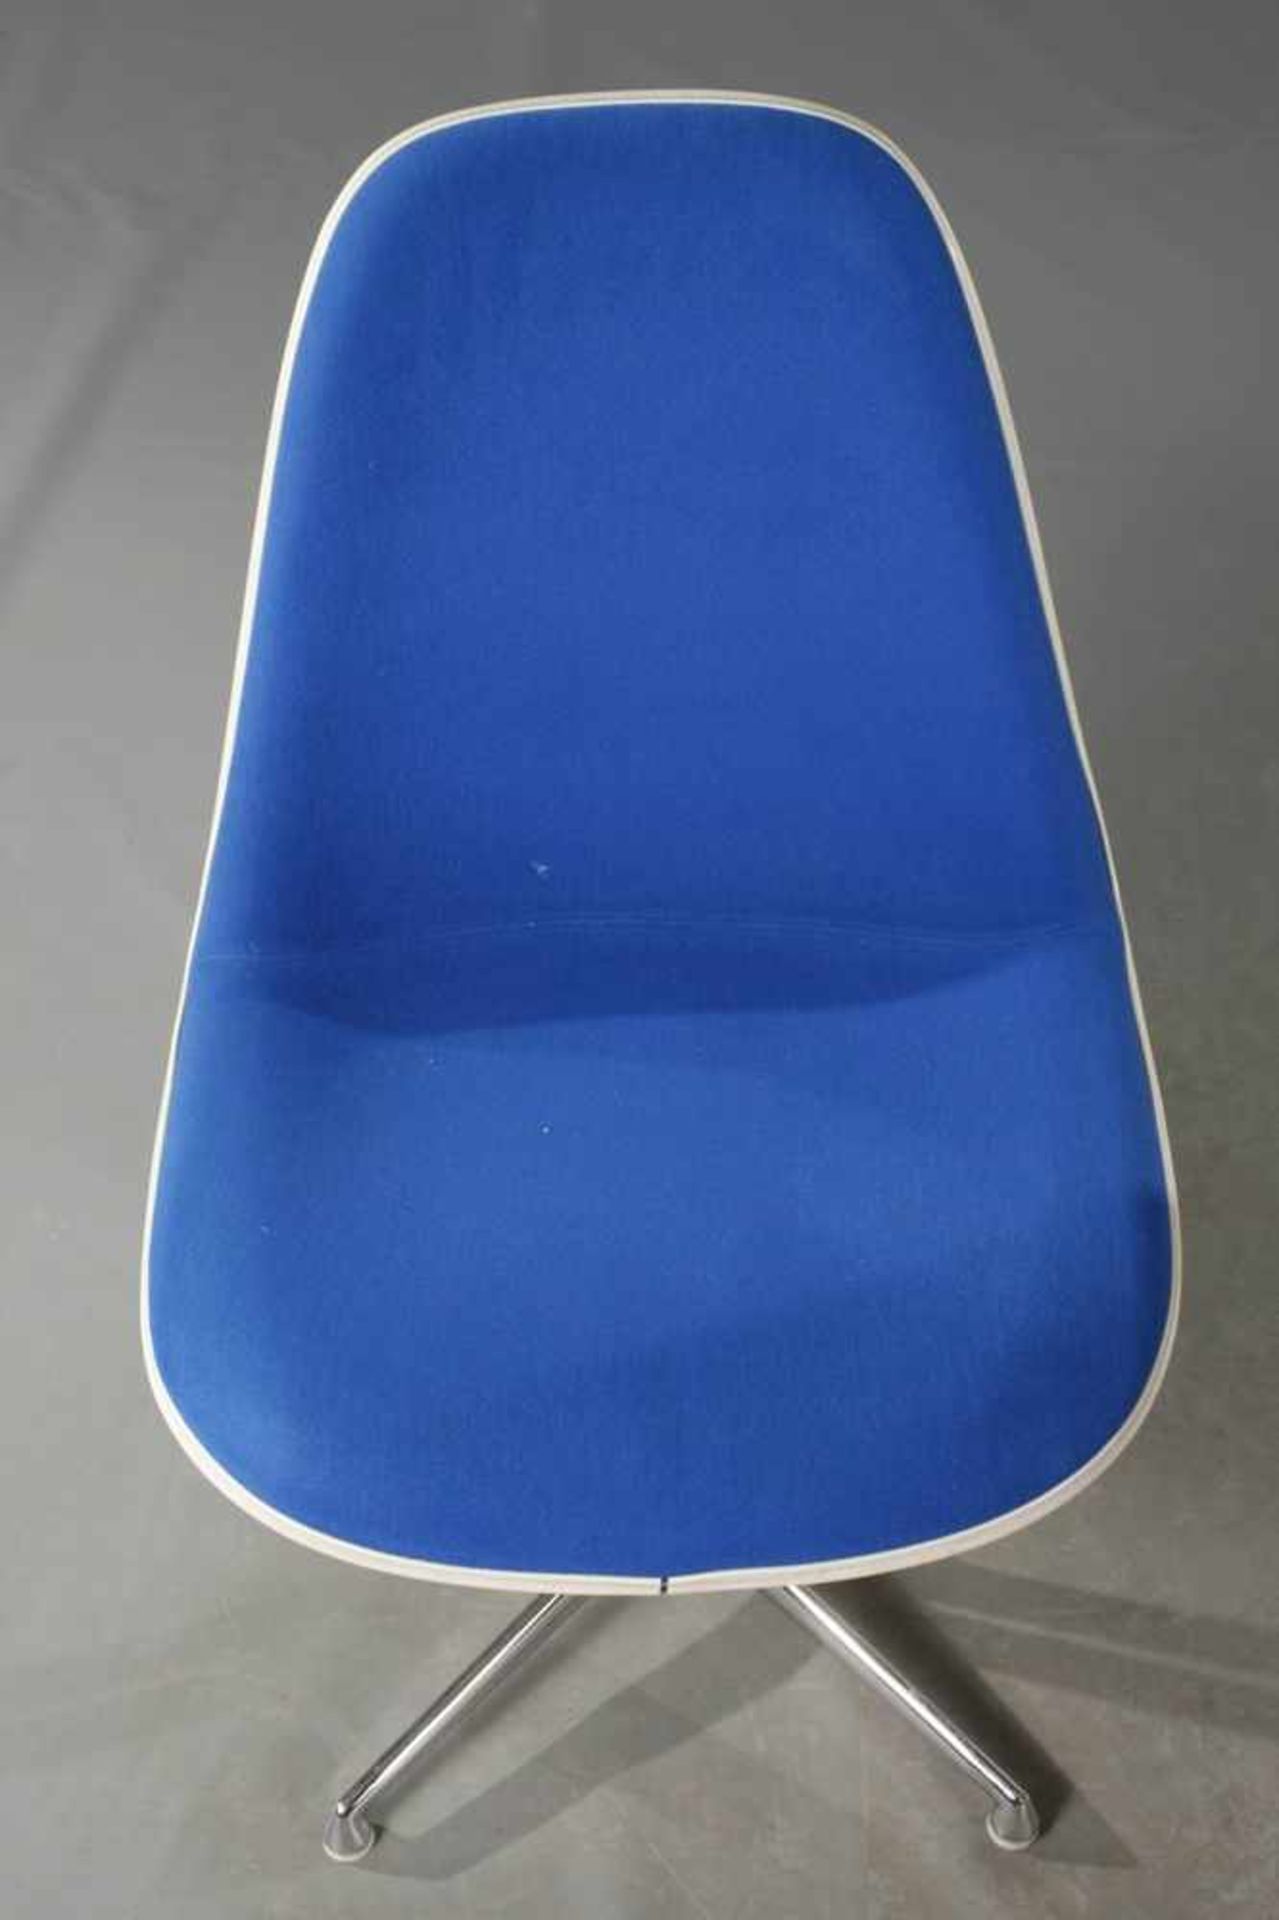 Vier Stühle "Lafonda" Charles & Ray Eames Entwurf 1961, Herstellung Vitra Weil am Rhein, Sitzschalen - Bild 7 aus 7